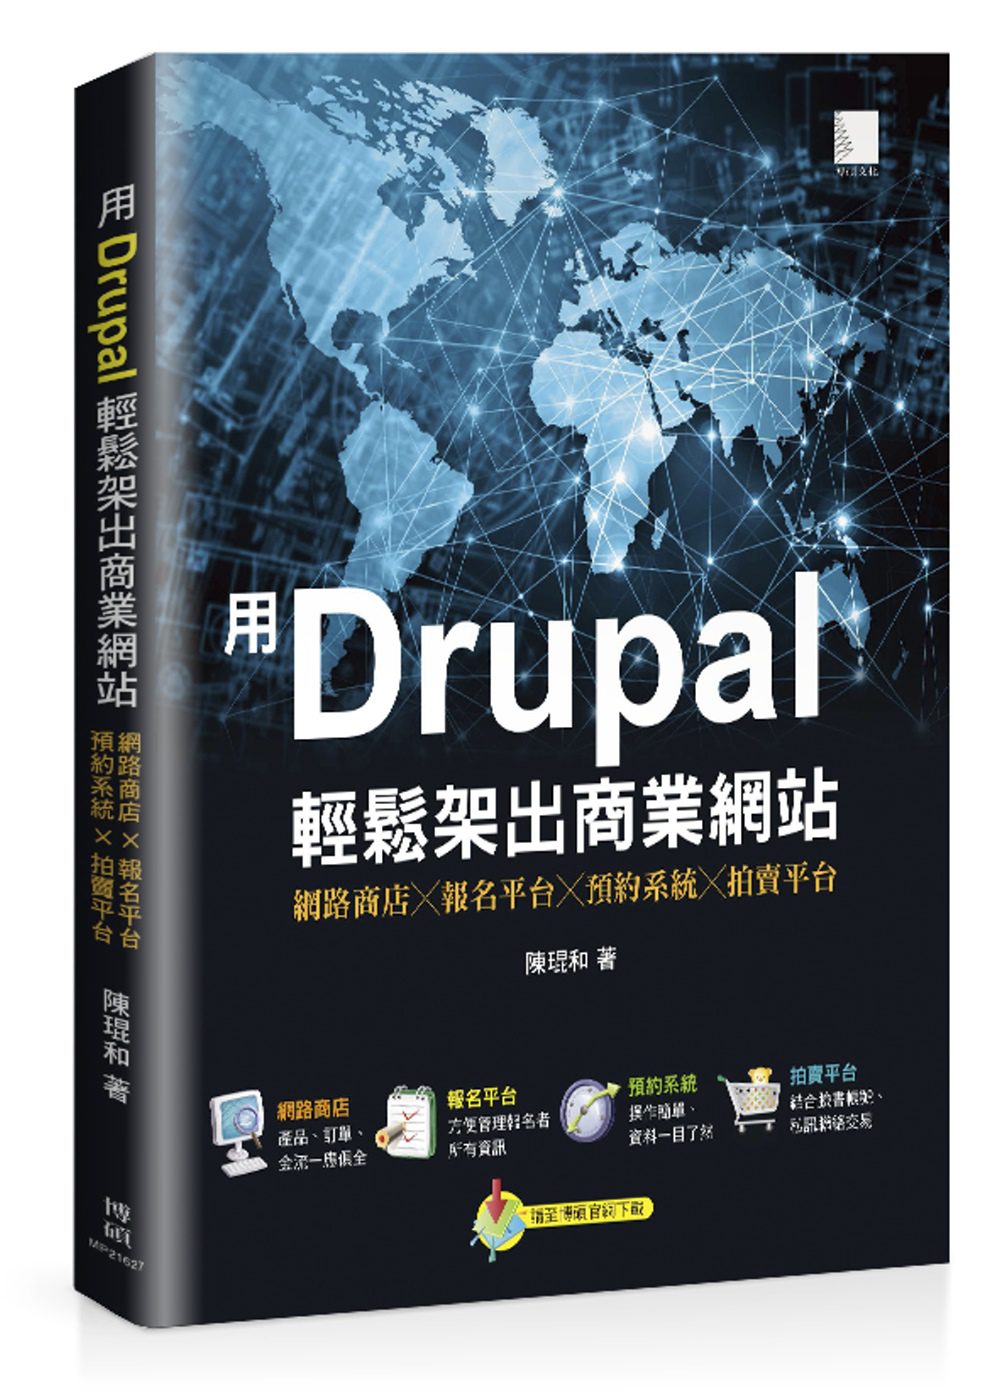 用Drupal輕鬆架出商業網站：網路商店╳報名平台╳預約系統╳拍賣平台